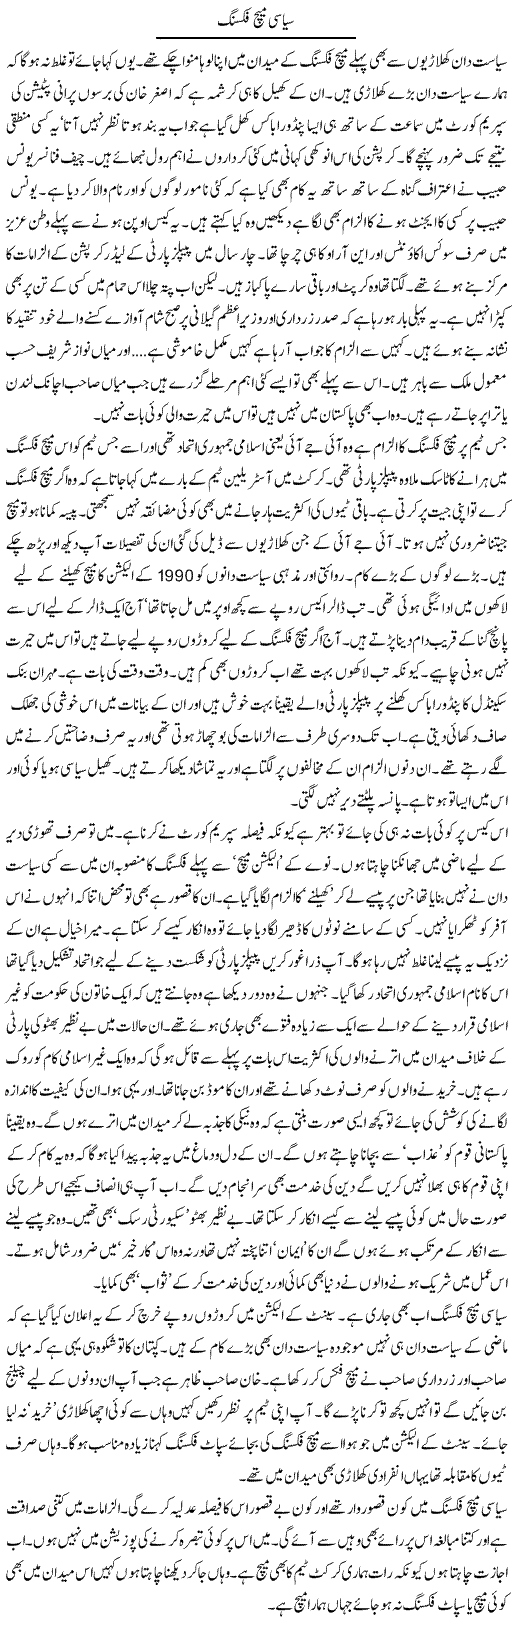 Political Match Fixing Express Column Iyaz Khan 13 March 2012